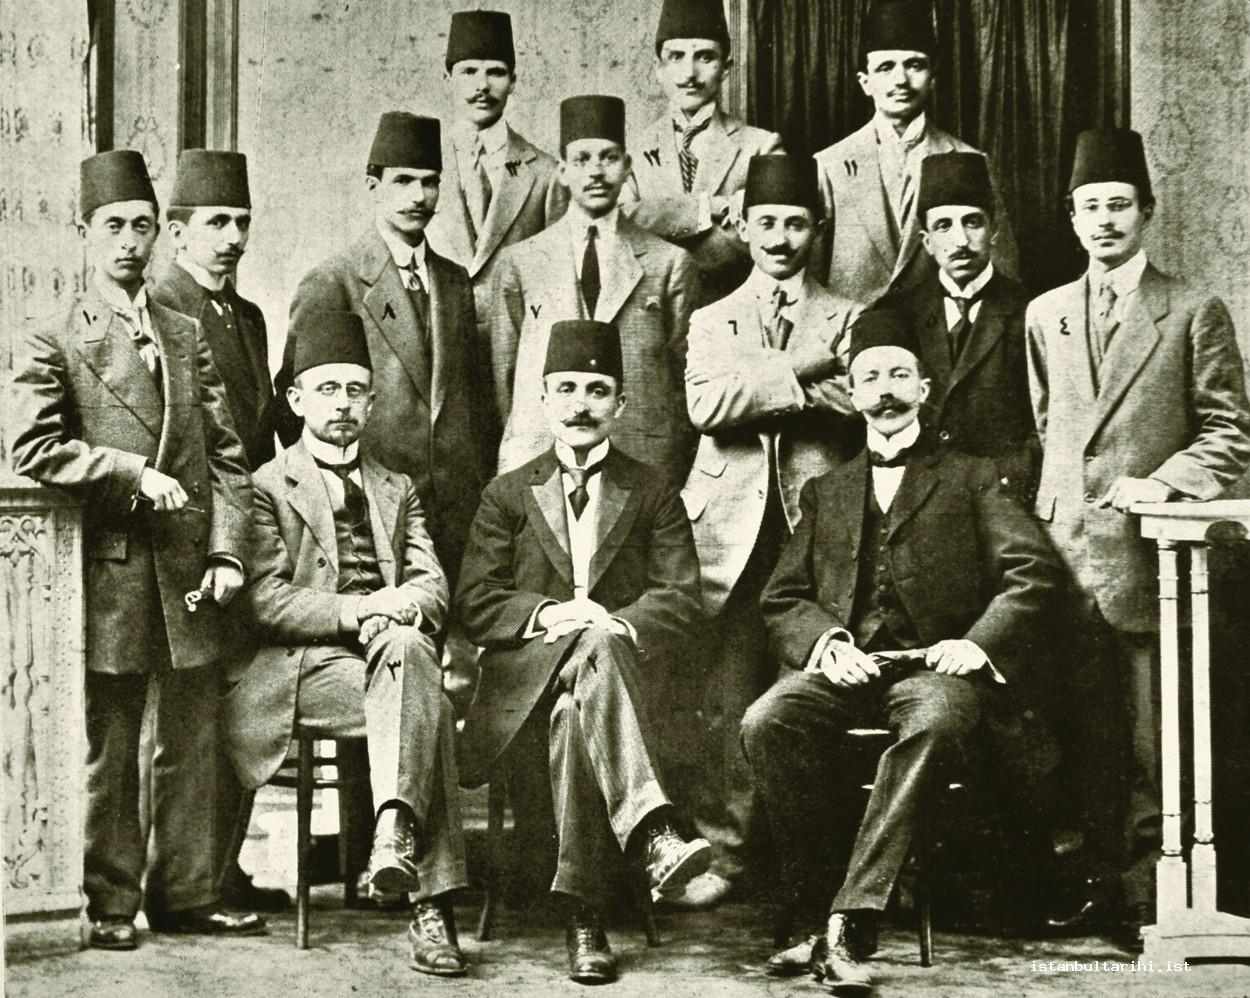 4- Mühendis Mektebi’nin 1911 yılı mezunları ve hocalarından bazıları (Şehbâl): Ön sıra. Sağdan sola, önden arkaya: “1- Belçikalı Profesör Mösyö Dikman, 2-Mektep Müdürü Refik Bey, Elektrik Mühendisi Belçikalı Profesör Mihi?, 4-Galip, 5- Vahid, 6- Mehmed, 7-Kemal, 8- Abdullah, 9- Cemal, 10-Hasan, 11-Haydar, 12-Hacı Mehmed, 13 Mustafa Şevket Efendiler”